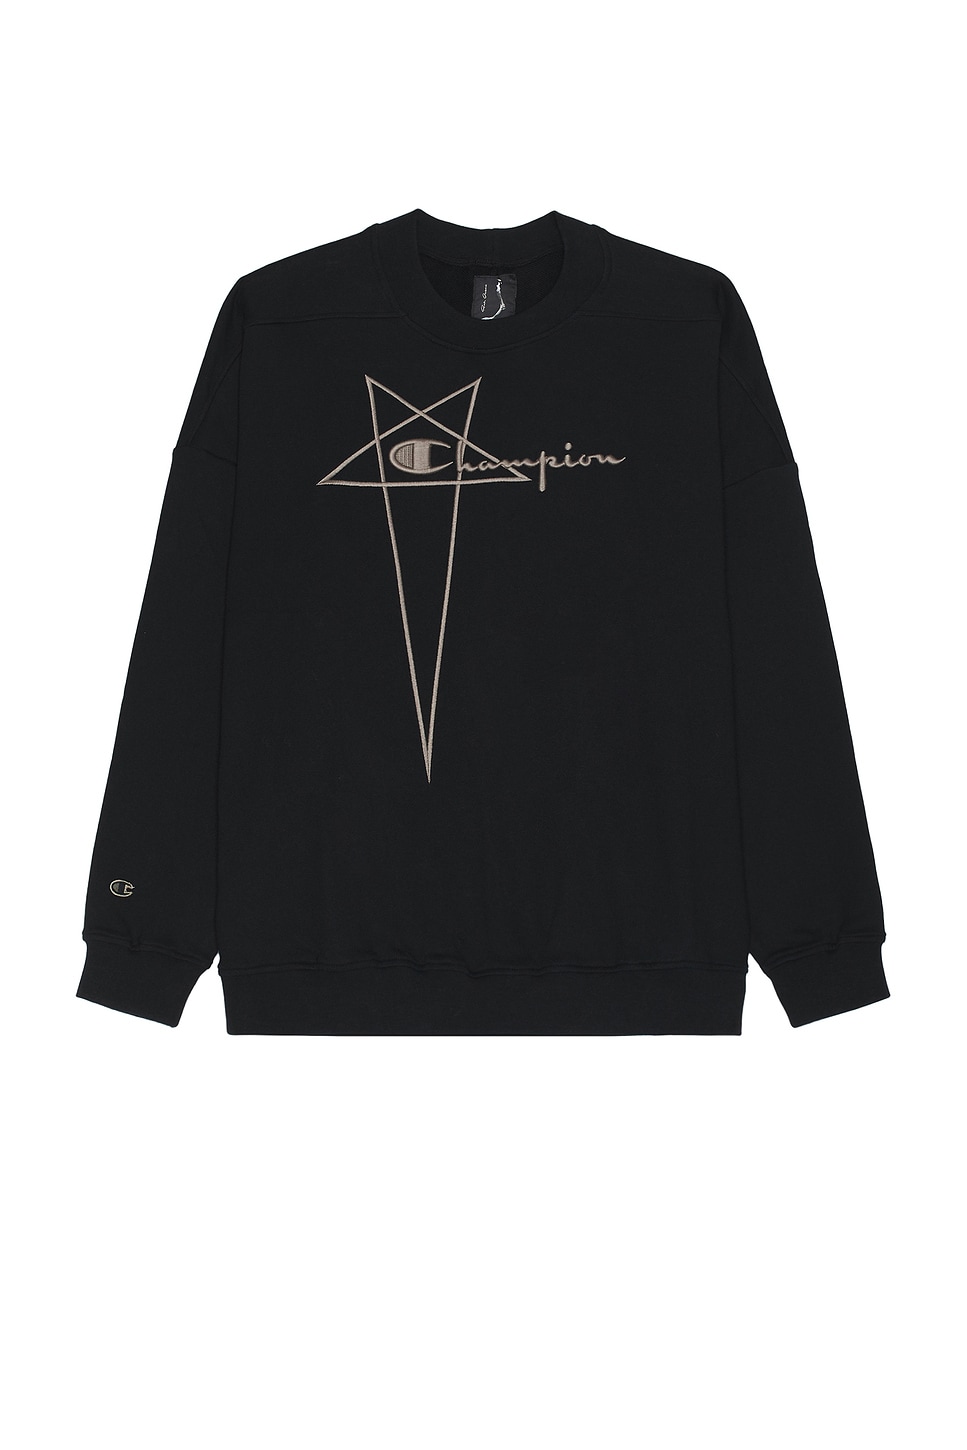 X Champion Jumbo Sweater in Black